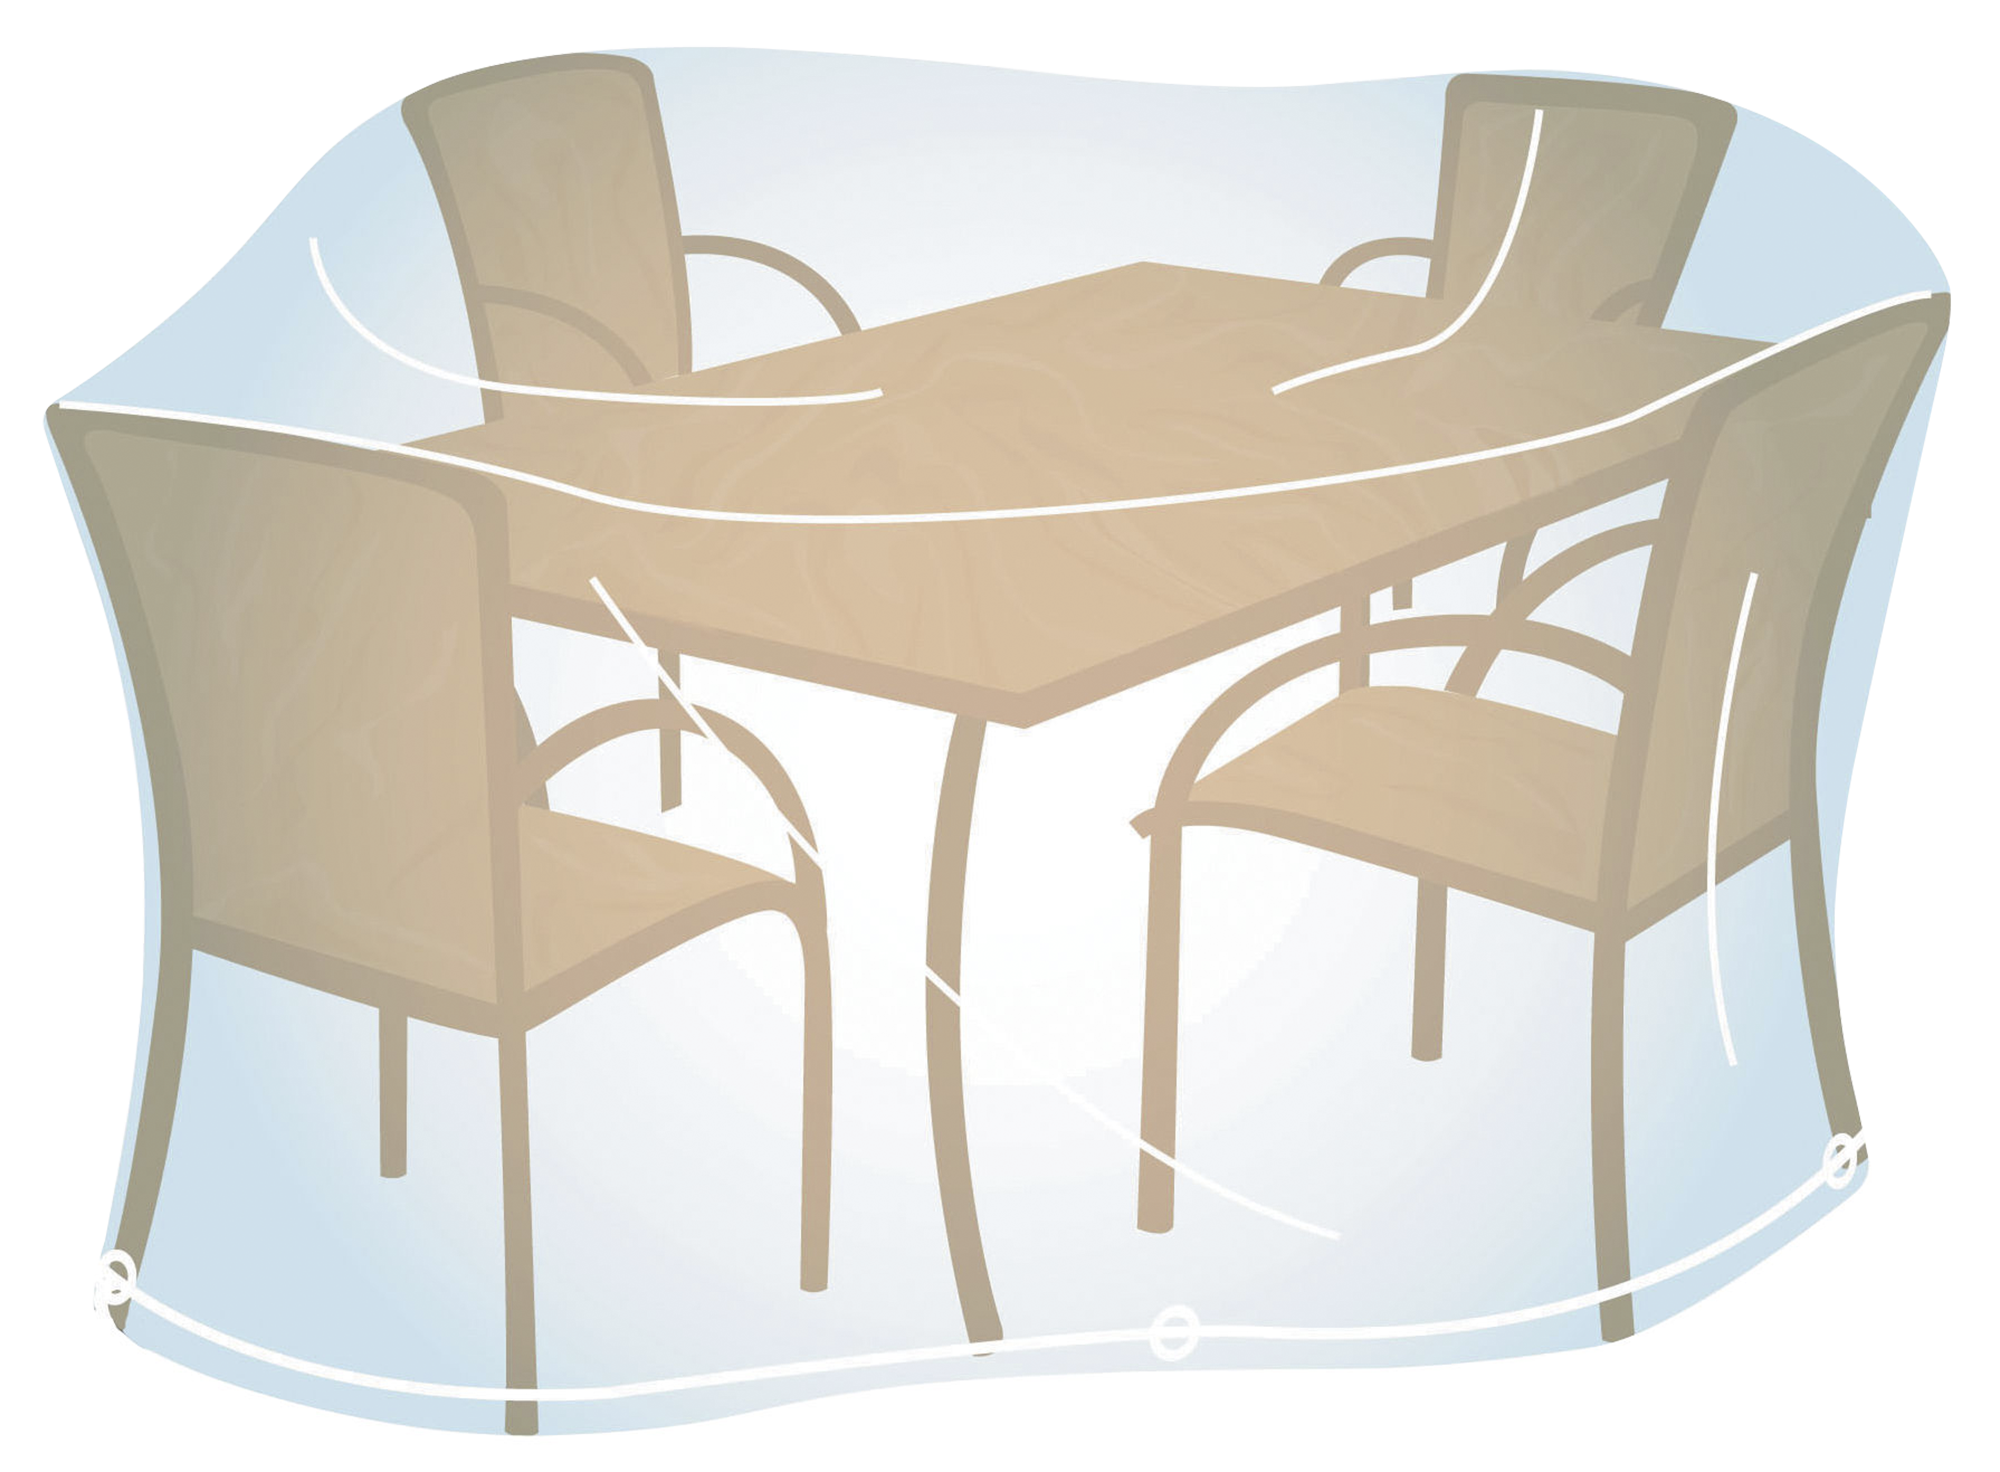 Funda de protección para mesa rectangular y sillas de pvc 170x150x90 cm